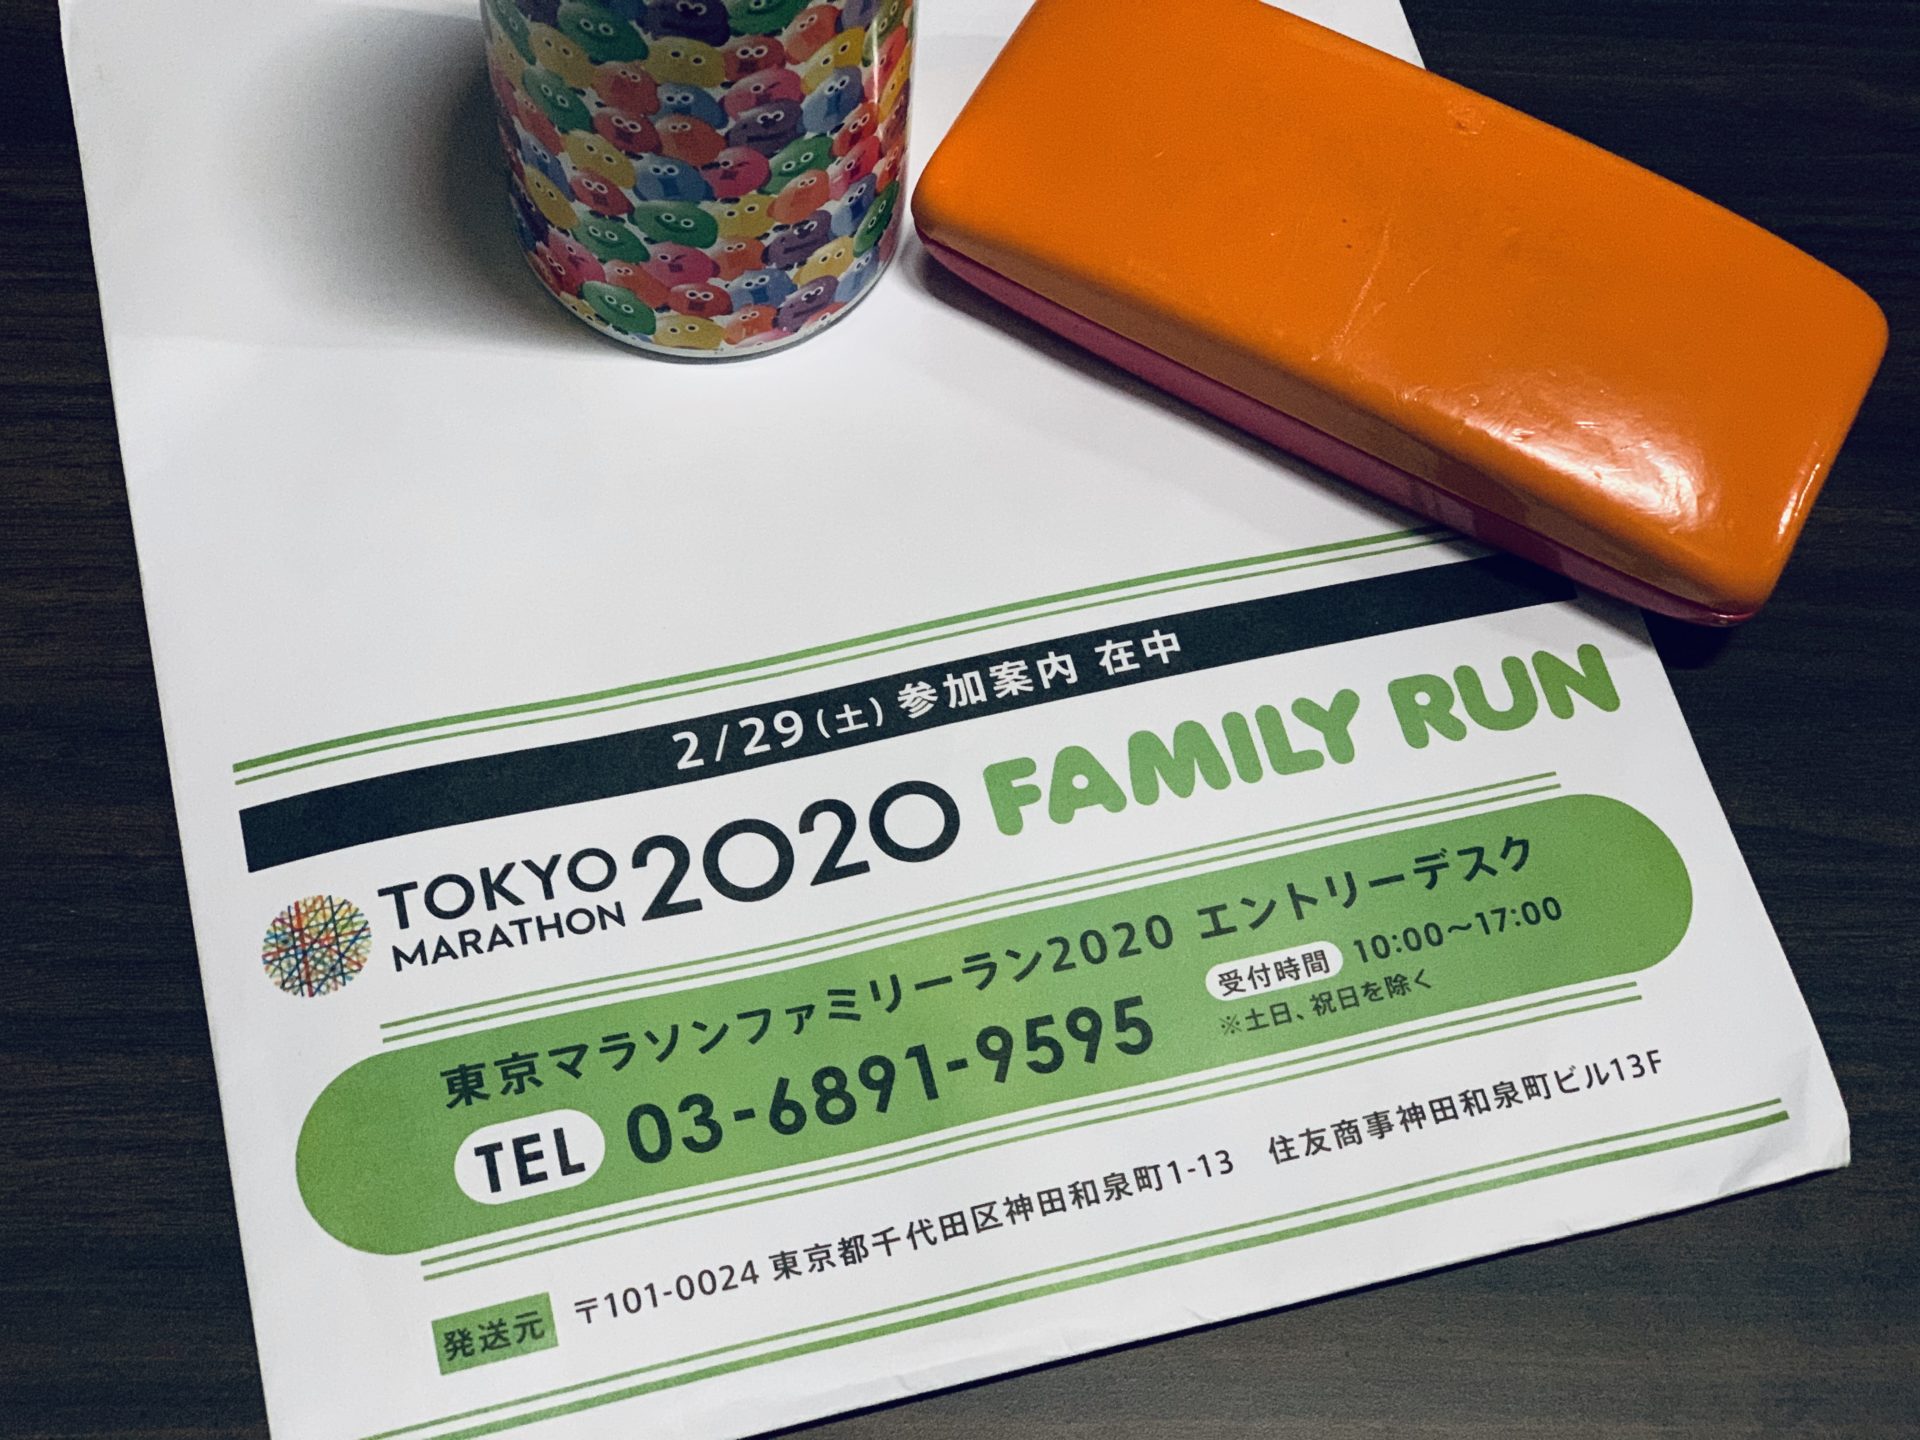 東京マラソンファミリーラン2020の参加案内が届いた